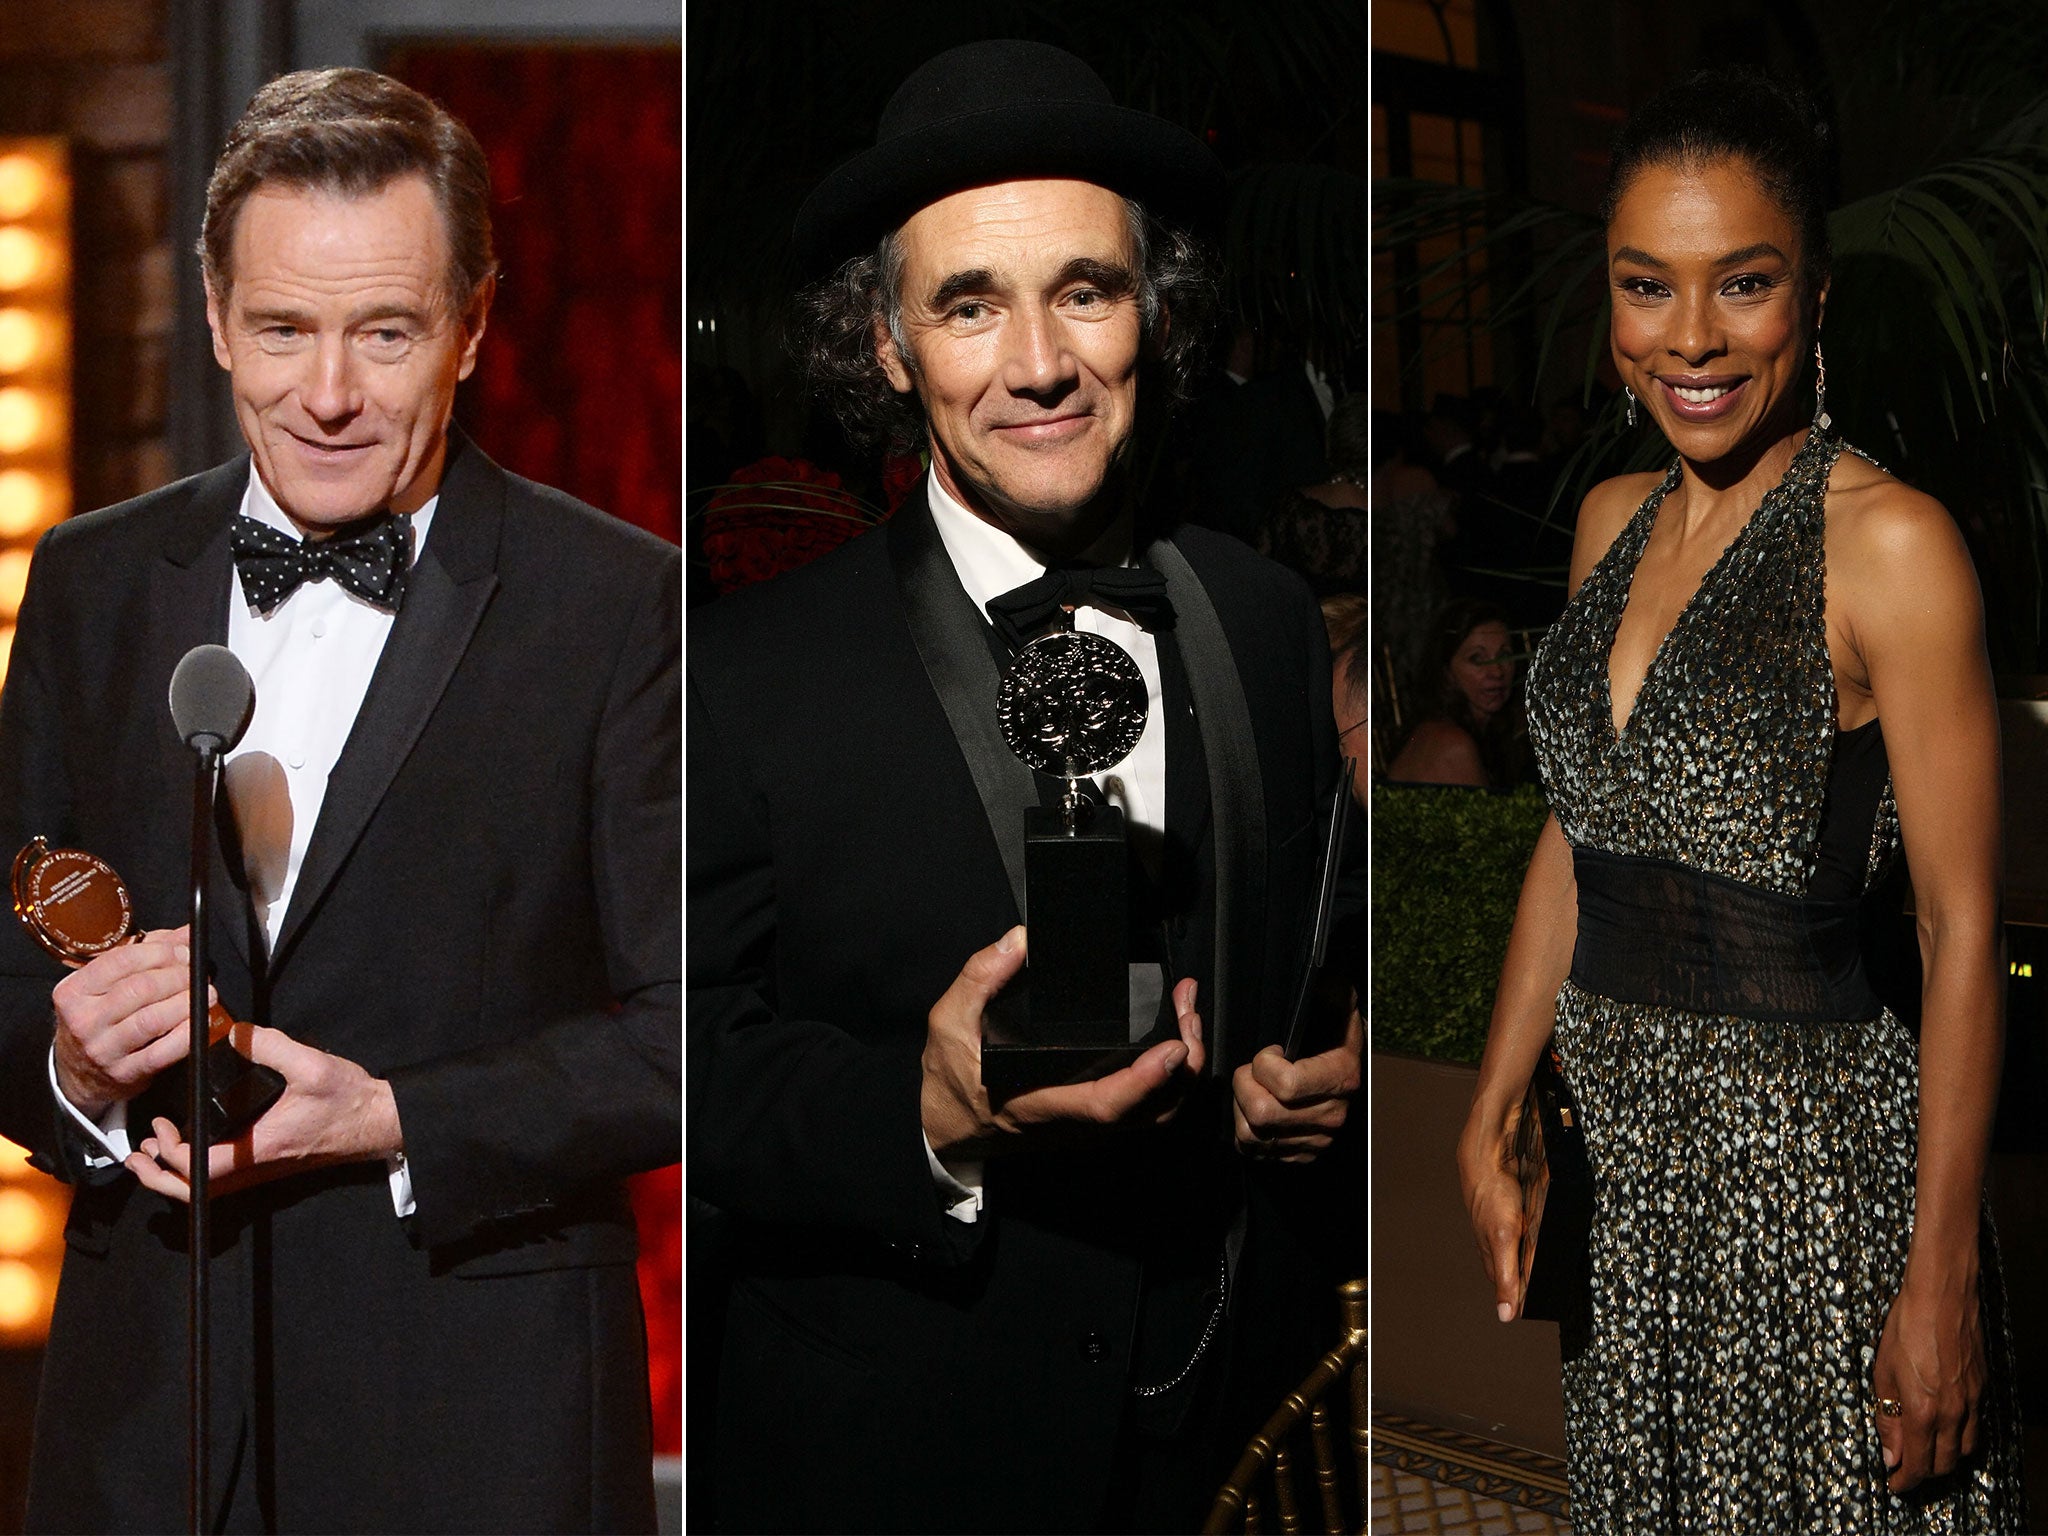 Bryan Cranston, Mark Rylance and Sophie Okonedo were among those honoured at the Tony Awards 2014